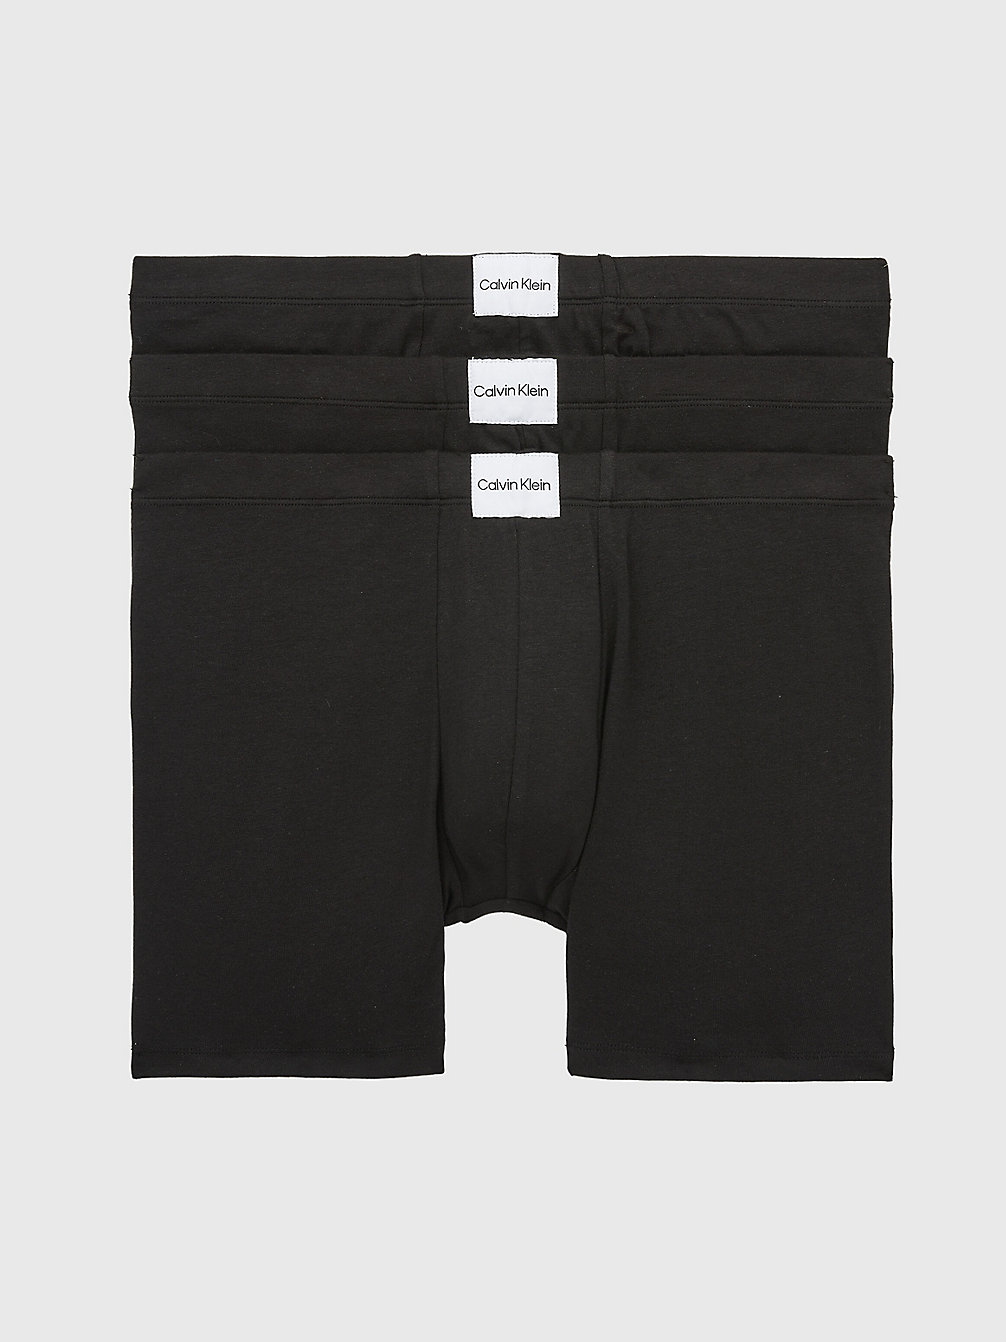 BLACK/BLACK/BLACK 3 Pack Boxershorts - Pure Cotton undefined Herren Calvin Klein